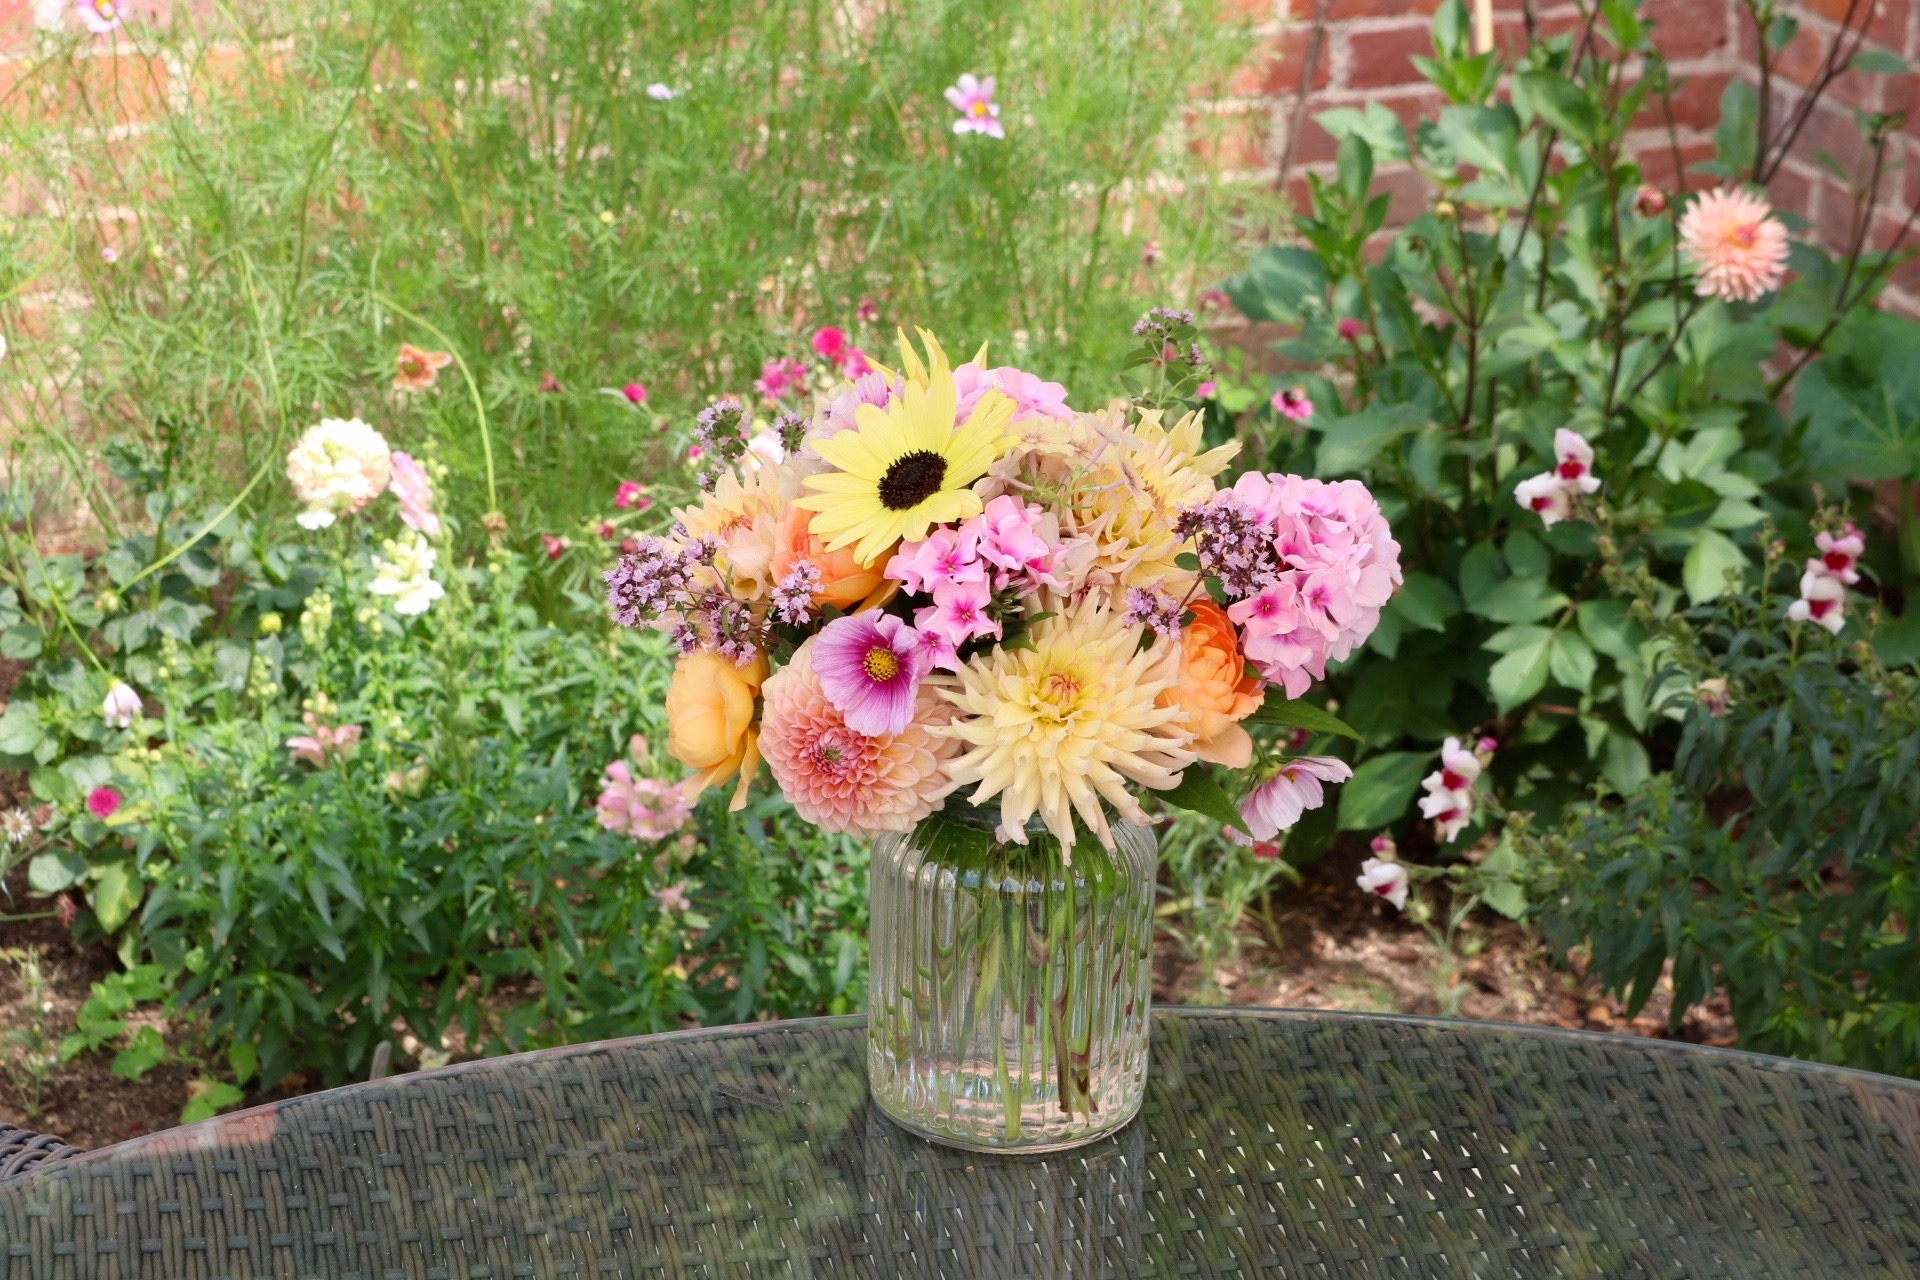 Pastel garden flower arrangement